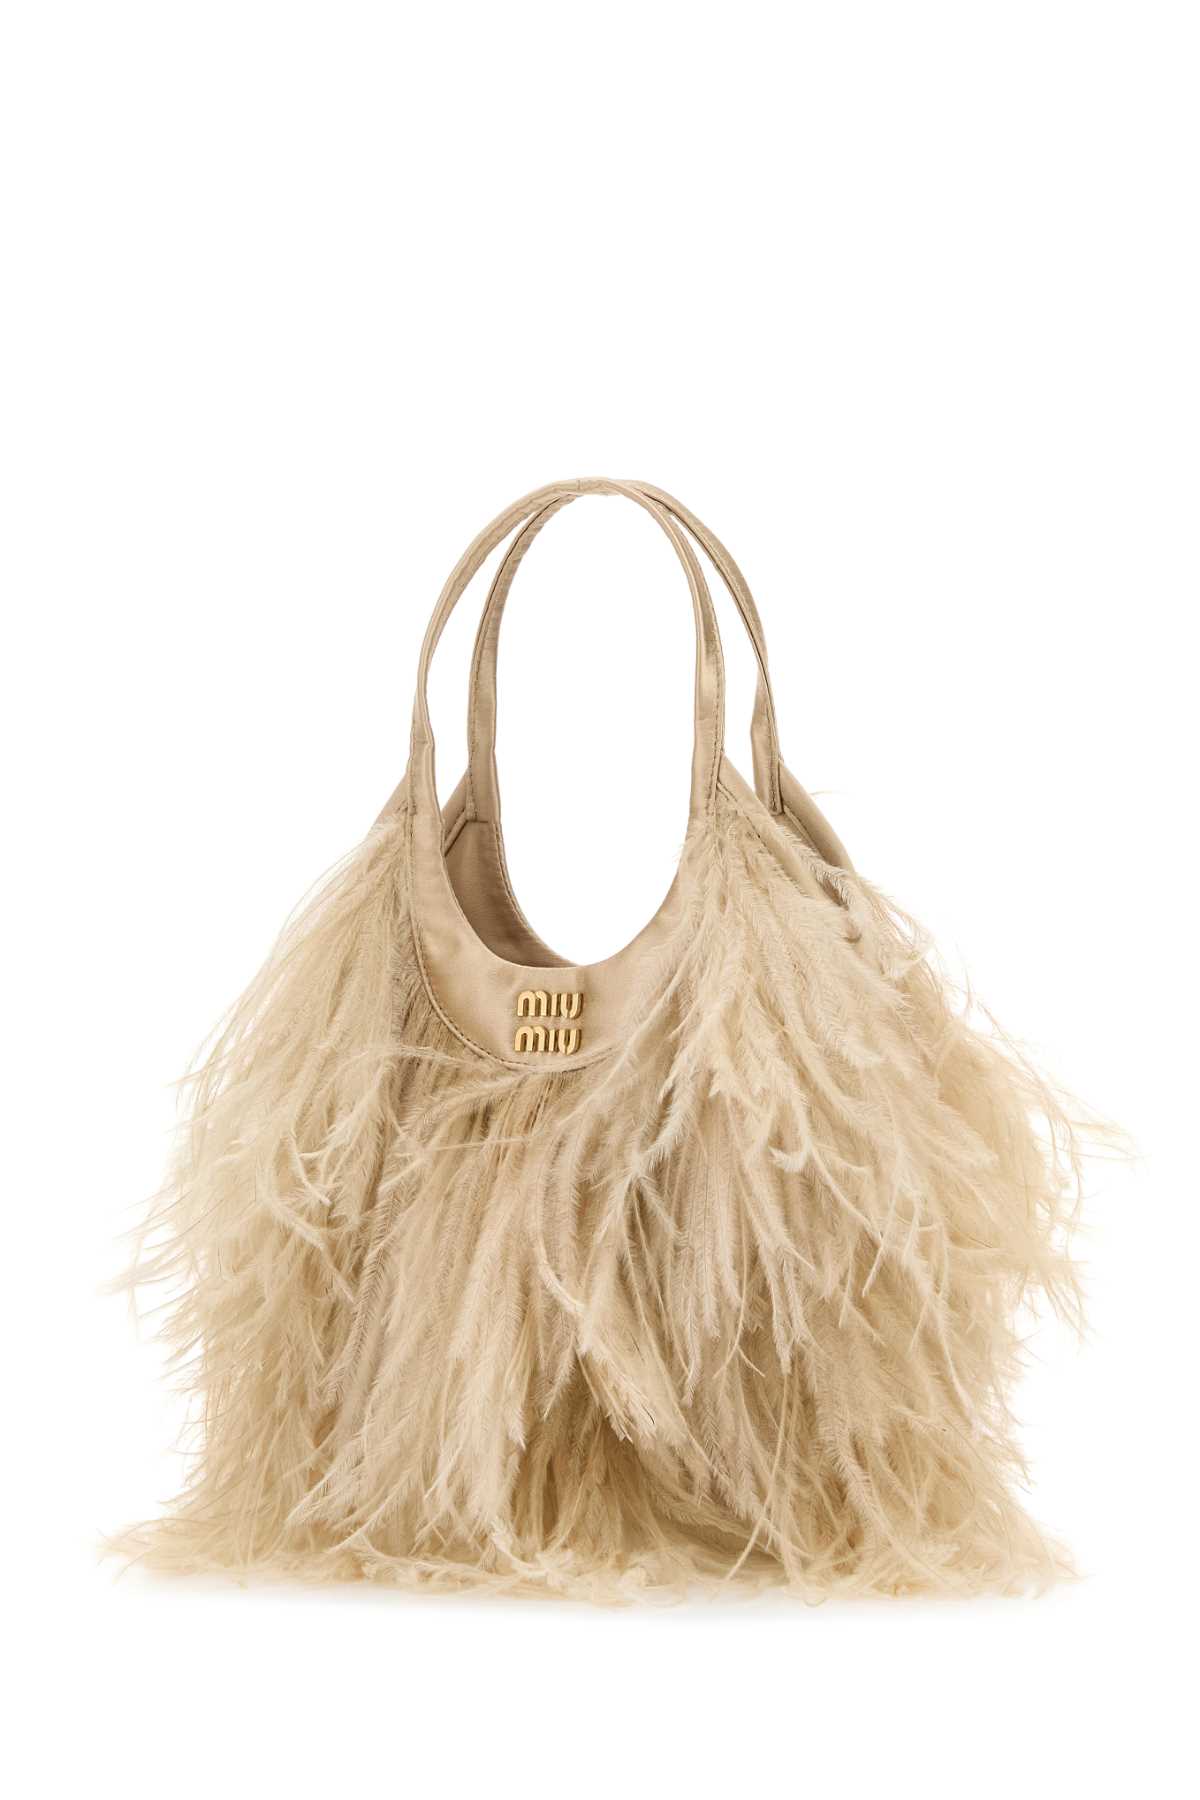 Miu Miu Embellished Satin Handbag In Sabbia